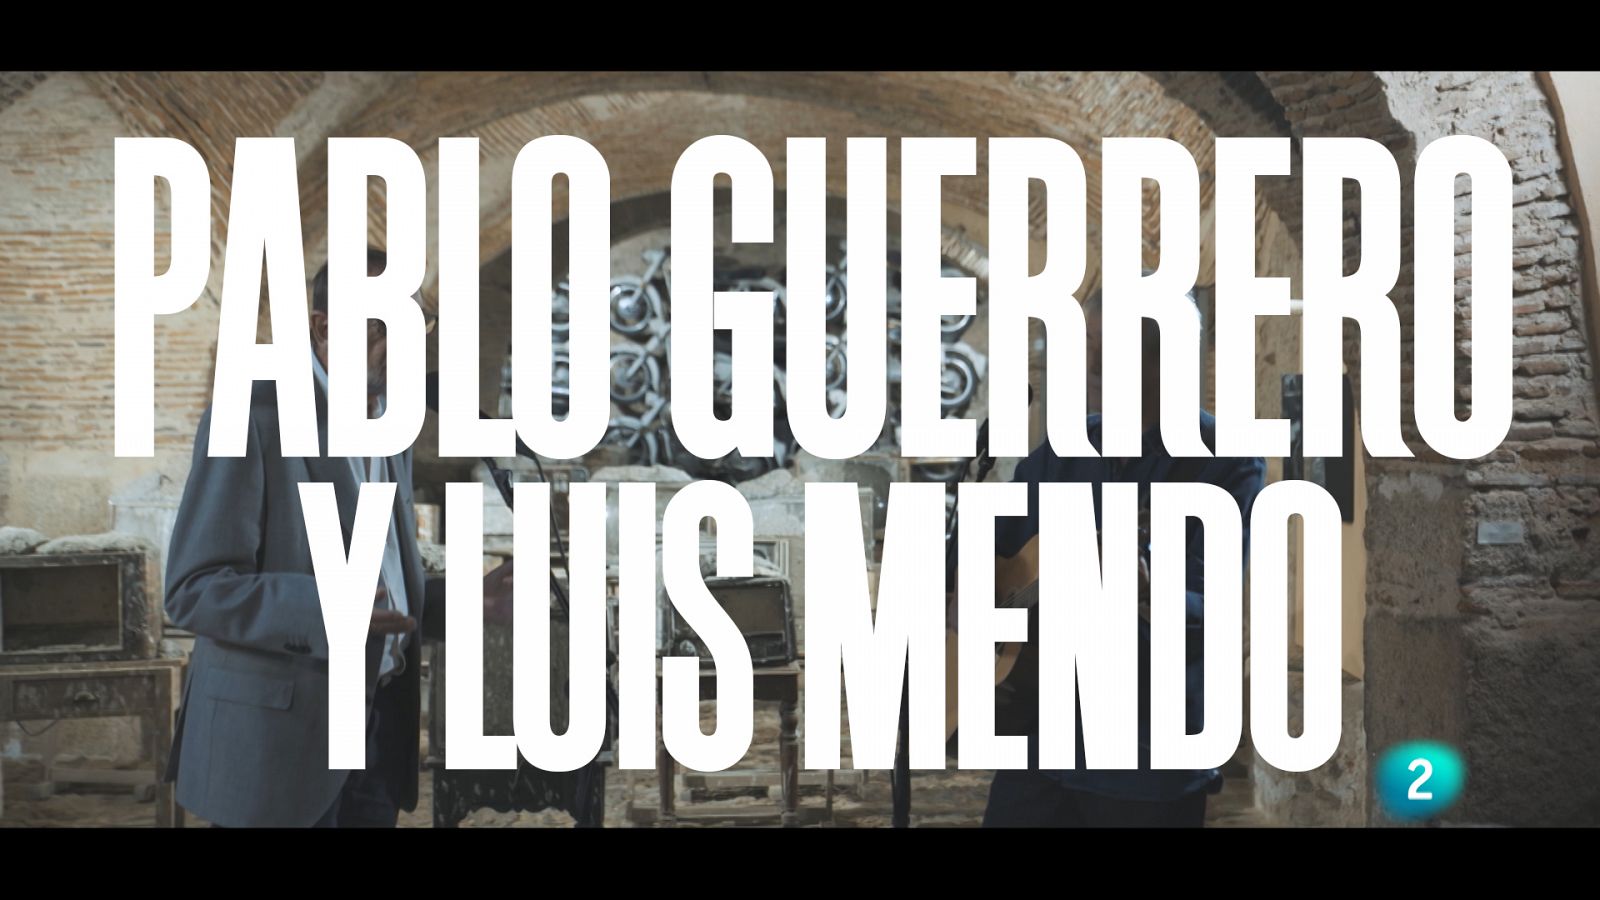 Un país para escucharlo - Escuchando Extremadura - Pablo Guerrero y Luis meno "A cántaros" 